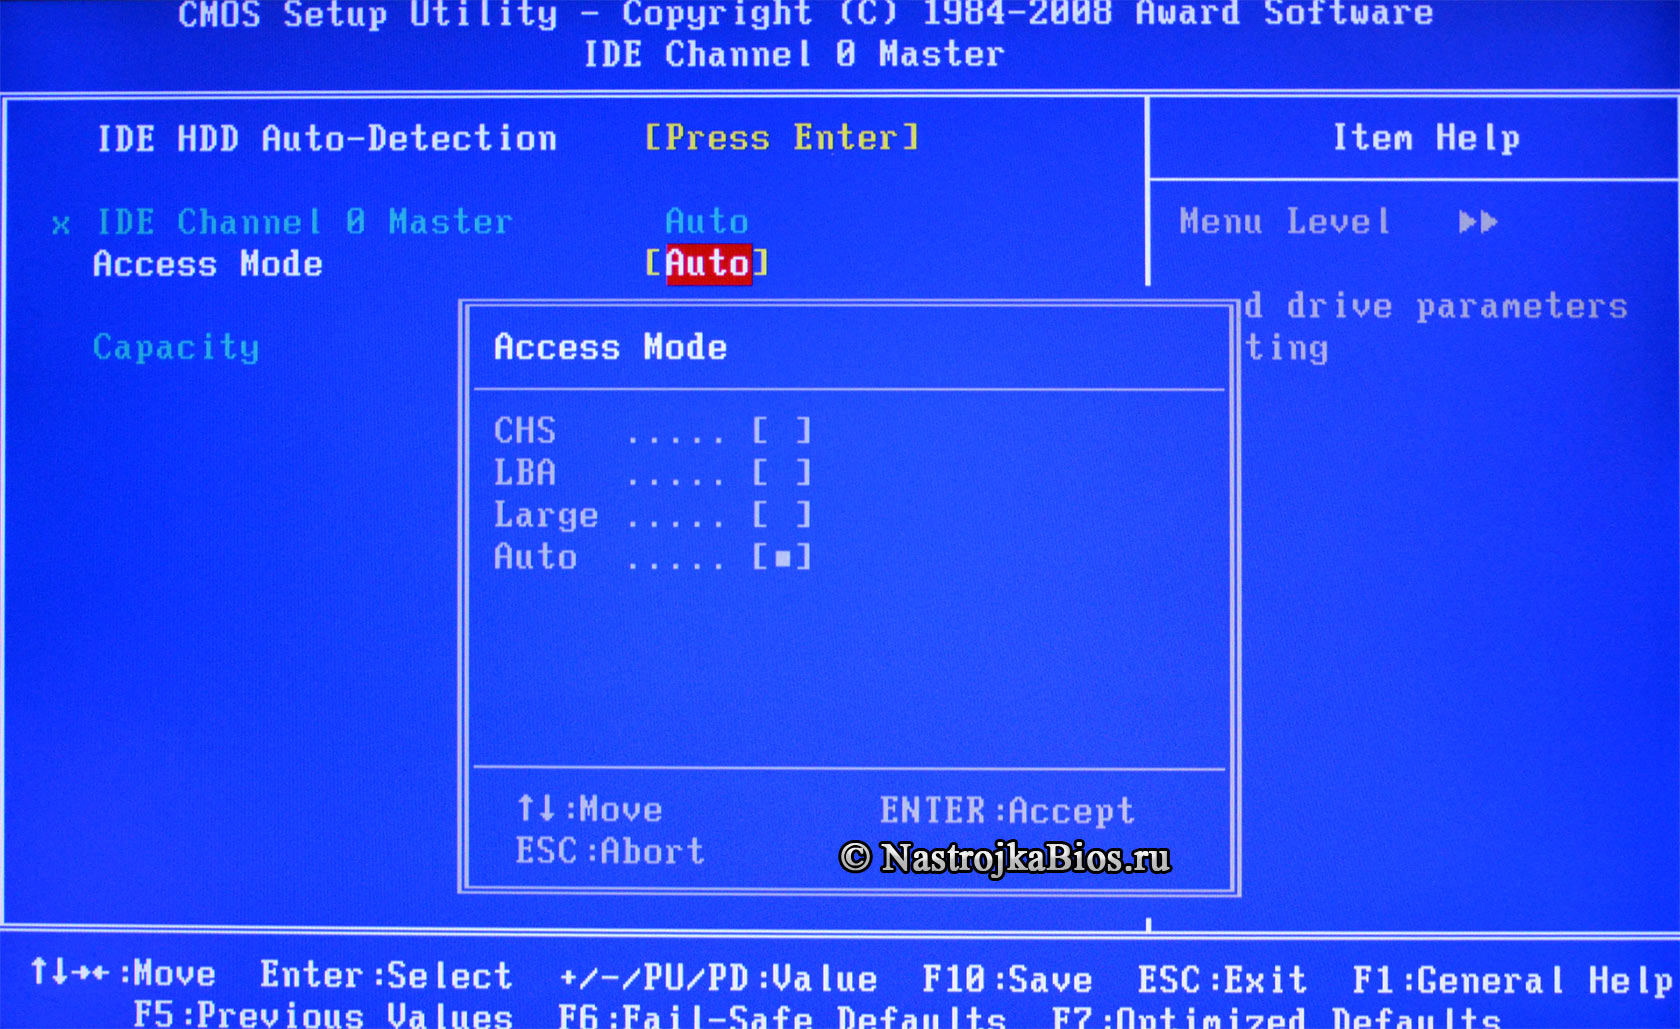 Mode - Access Mode - режим адресации на диске (с фото)